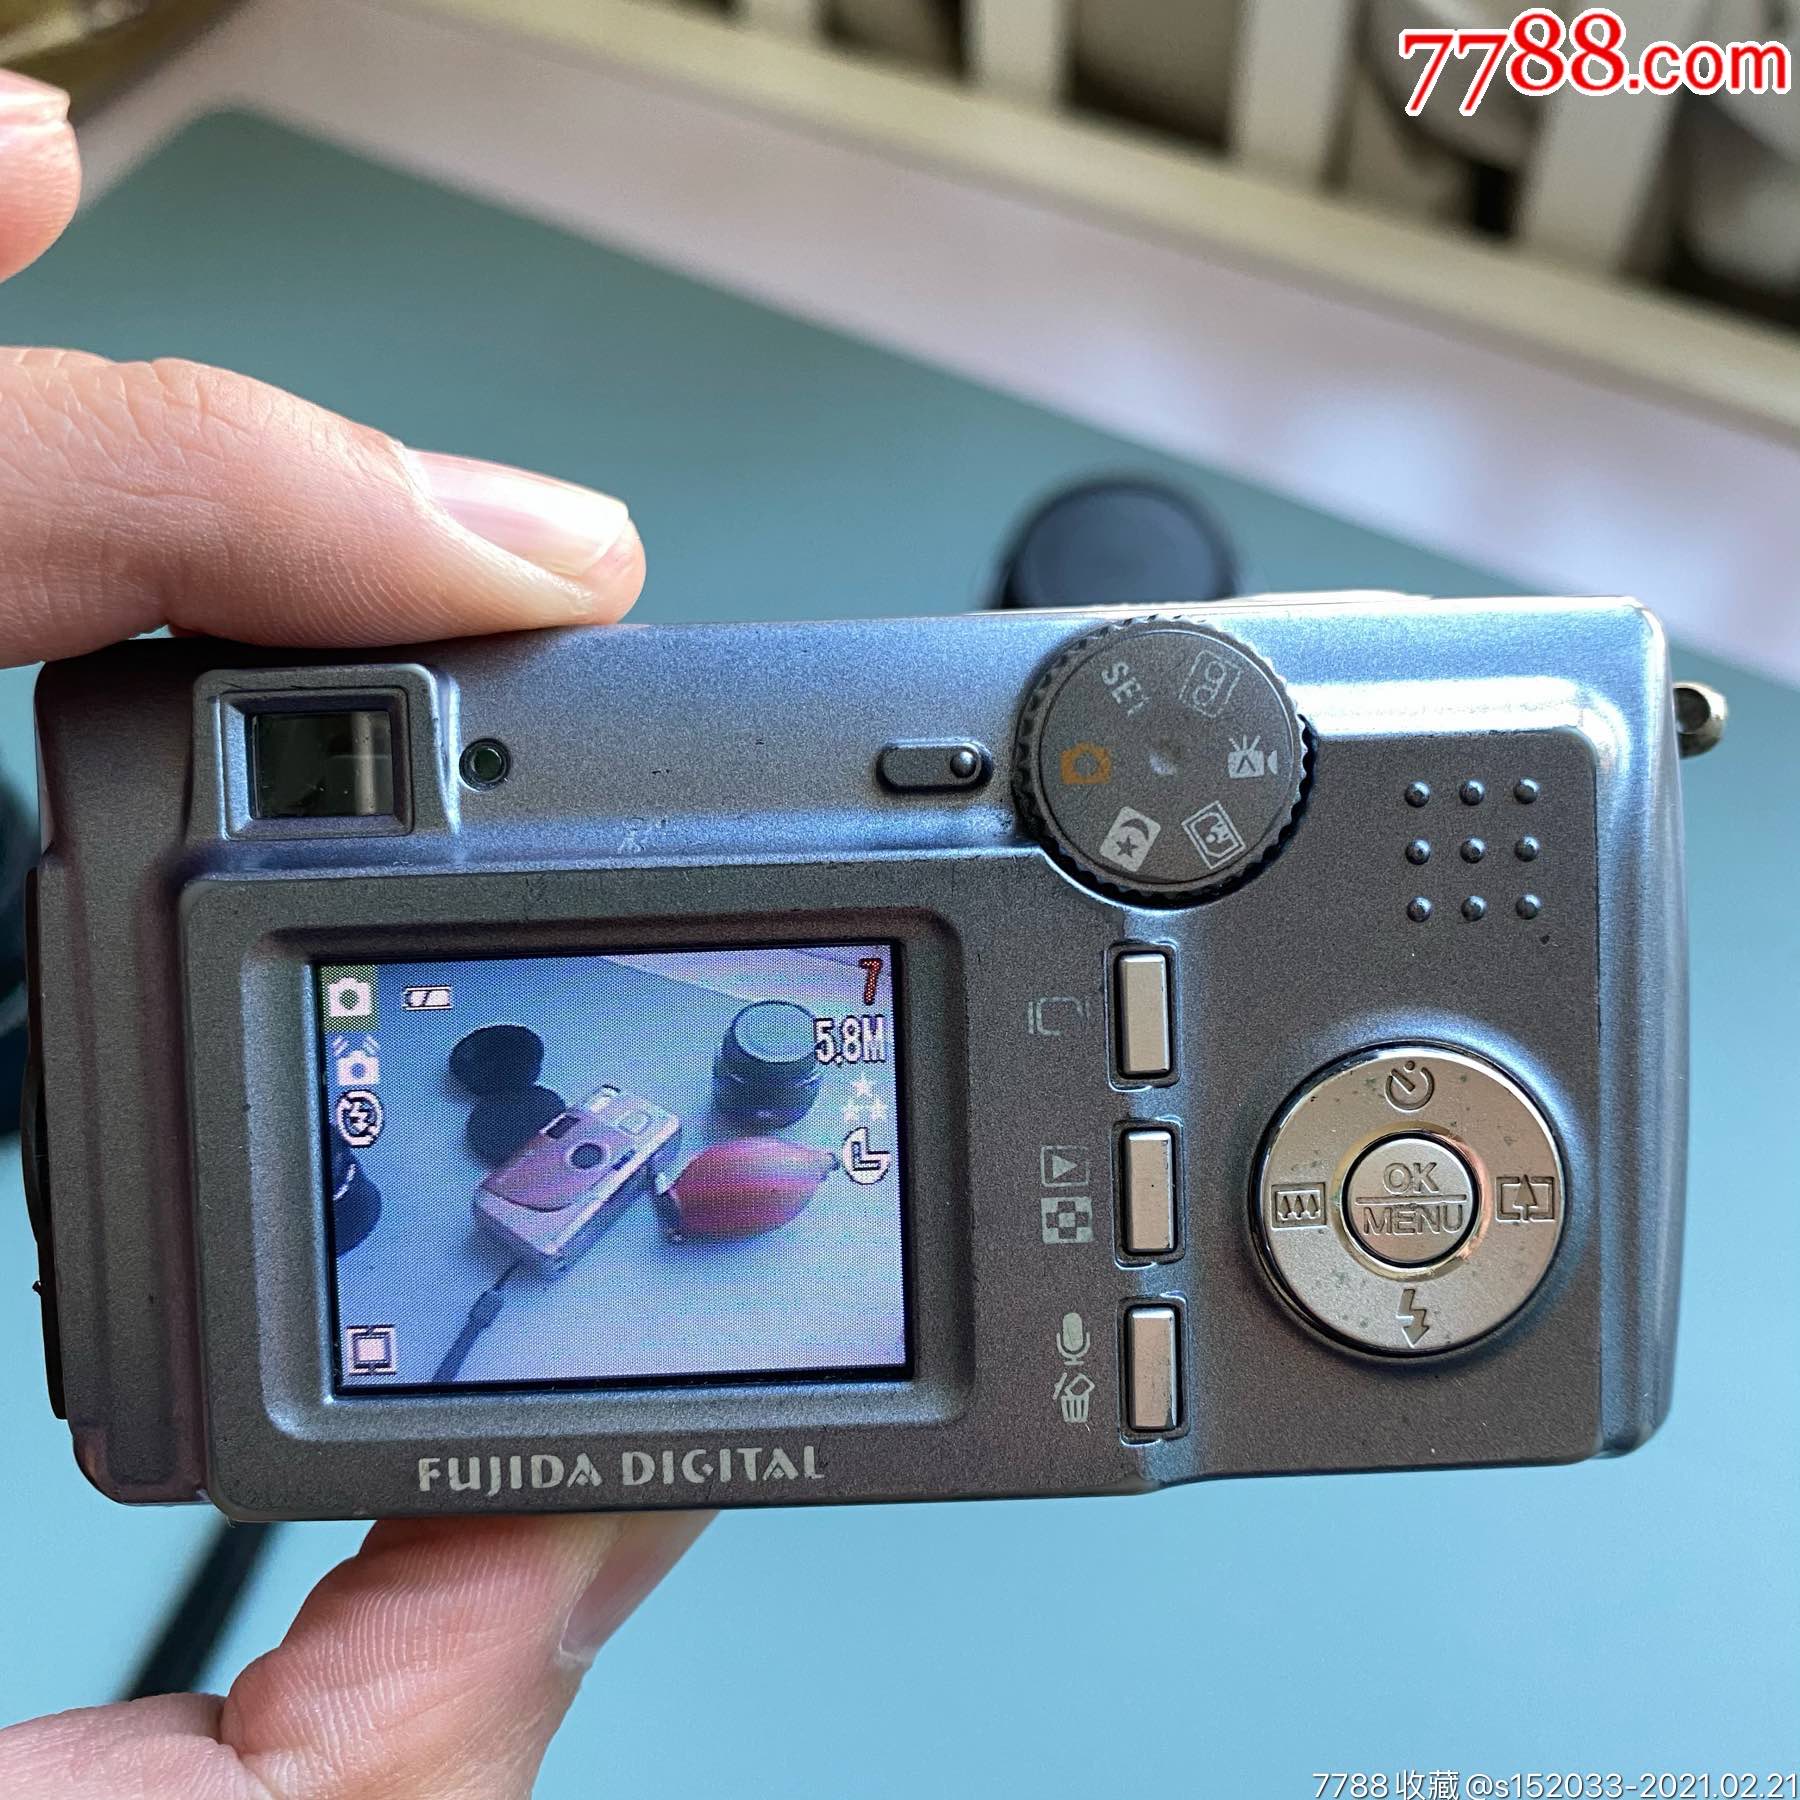 日本野鸡牌定焦数码ccd卡片机_卡片机/数码相机_第11张_7788相机收藏